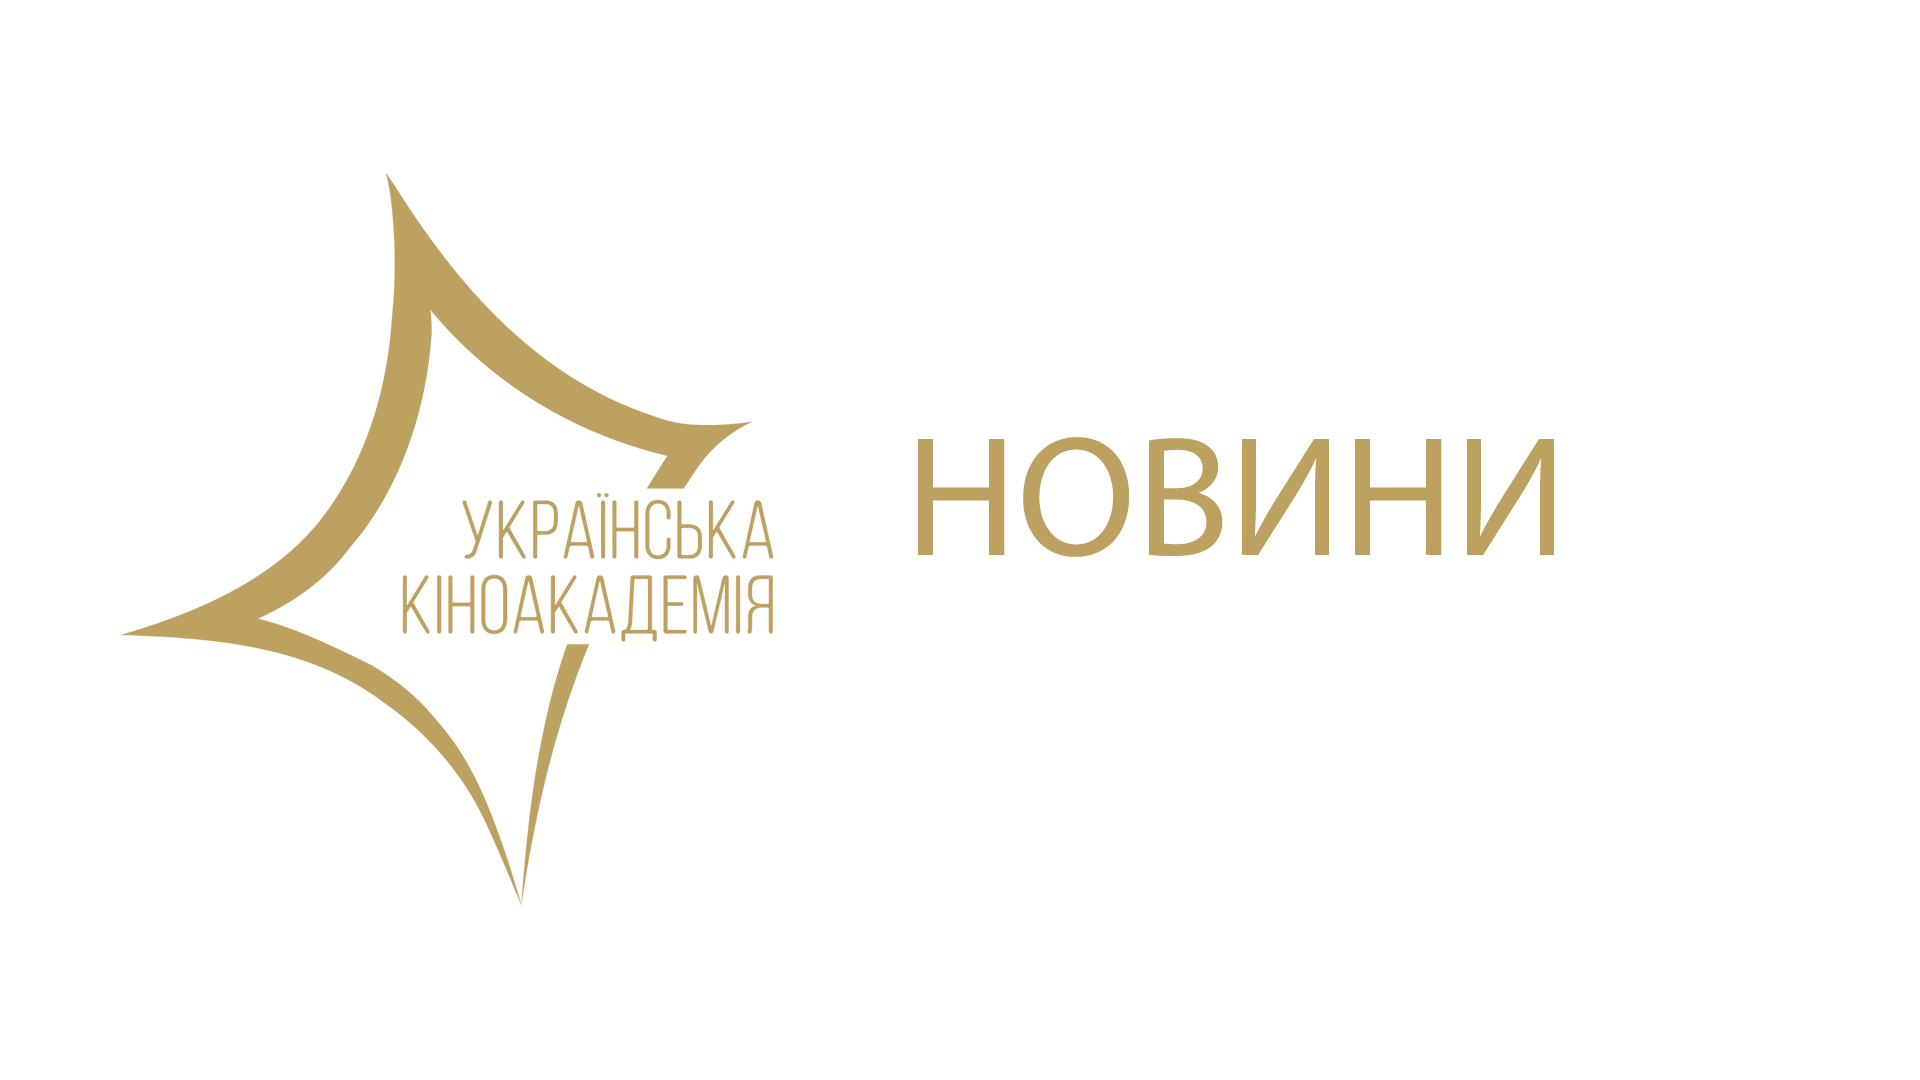 Прийом заявок тривав один місяць, за цей період з’явилося 343 претенденти на вступ до Української Кіноакадемії